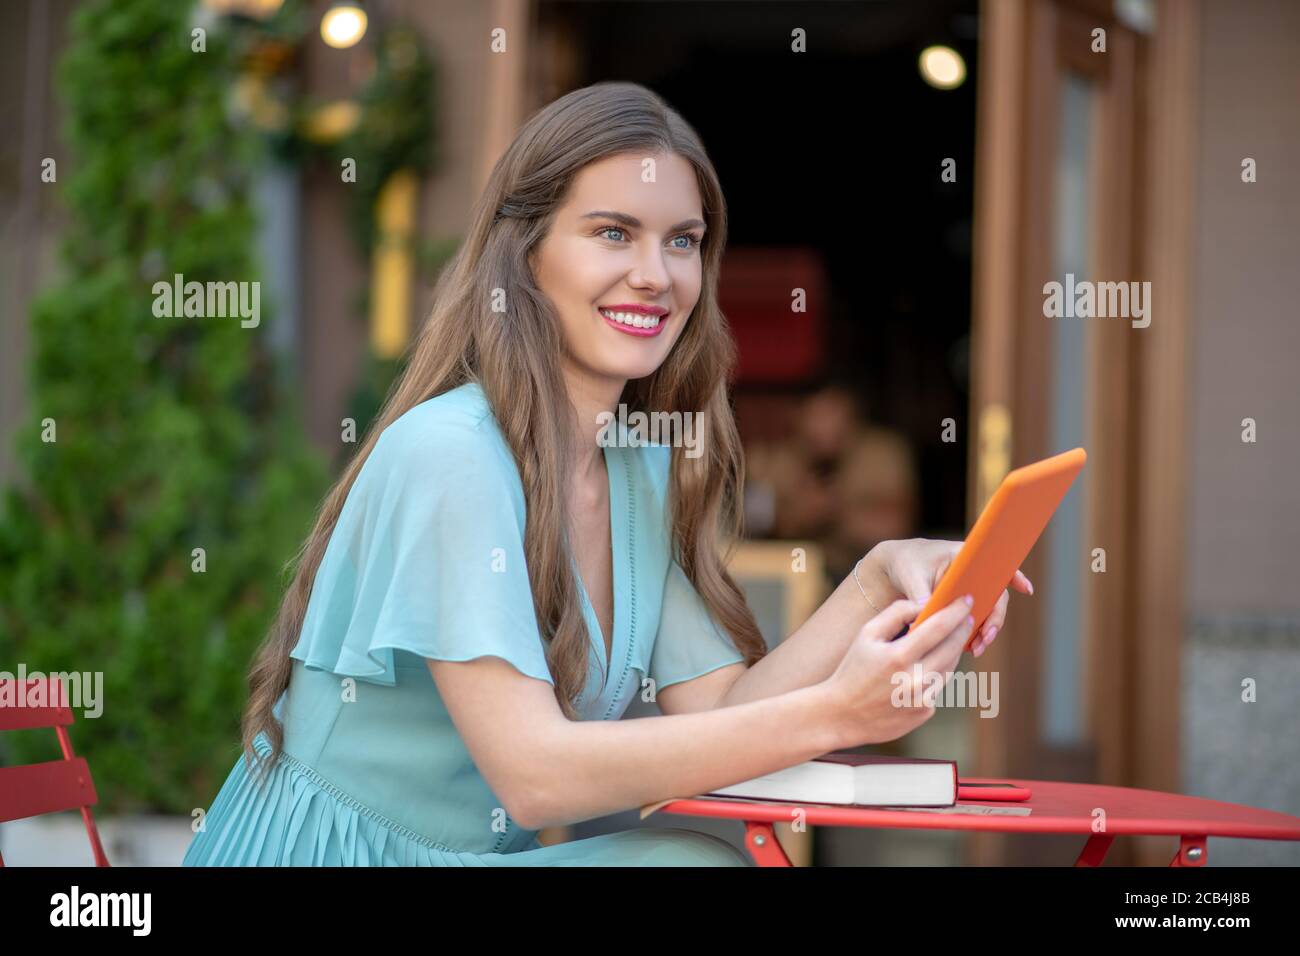 Femme romantique en robe bleue assise dans un café en plein air, tenant une tablette orange, souriant Banque D'Images